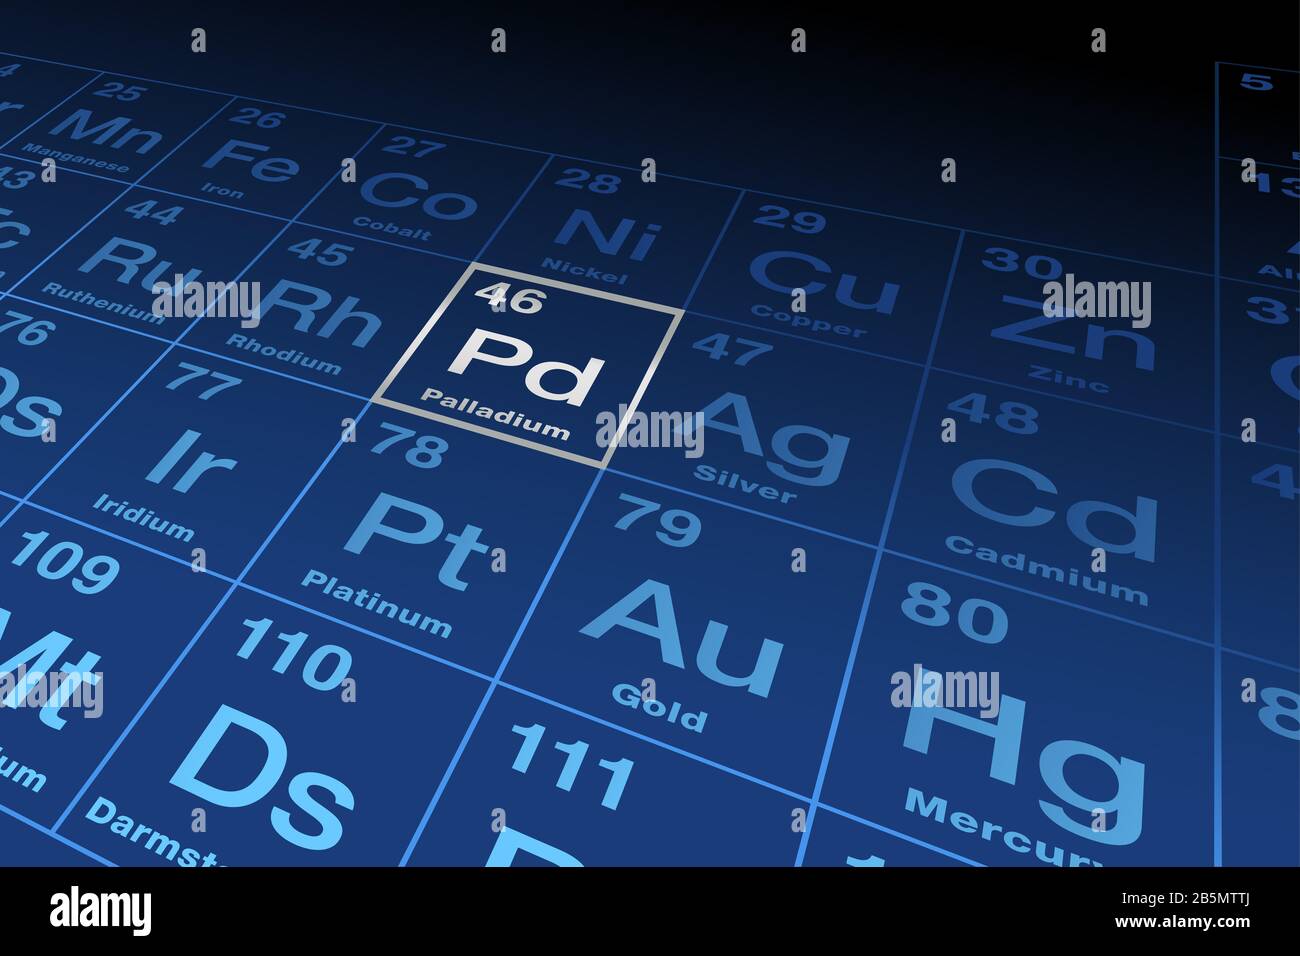 Élément palladium sur la table périodique des éléments. Élément chimique avec le symbole Pd et le numéro atomique 46. Métal de transition. Banque D'Images